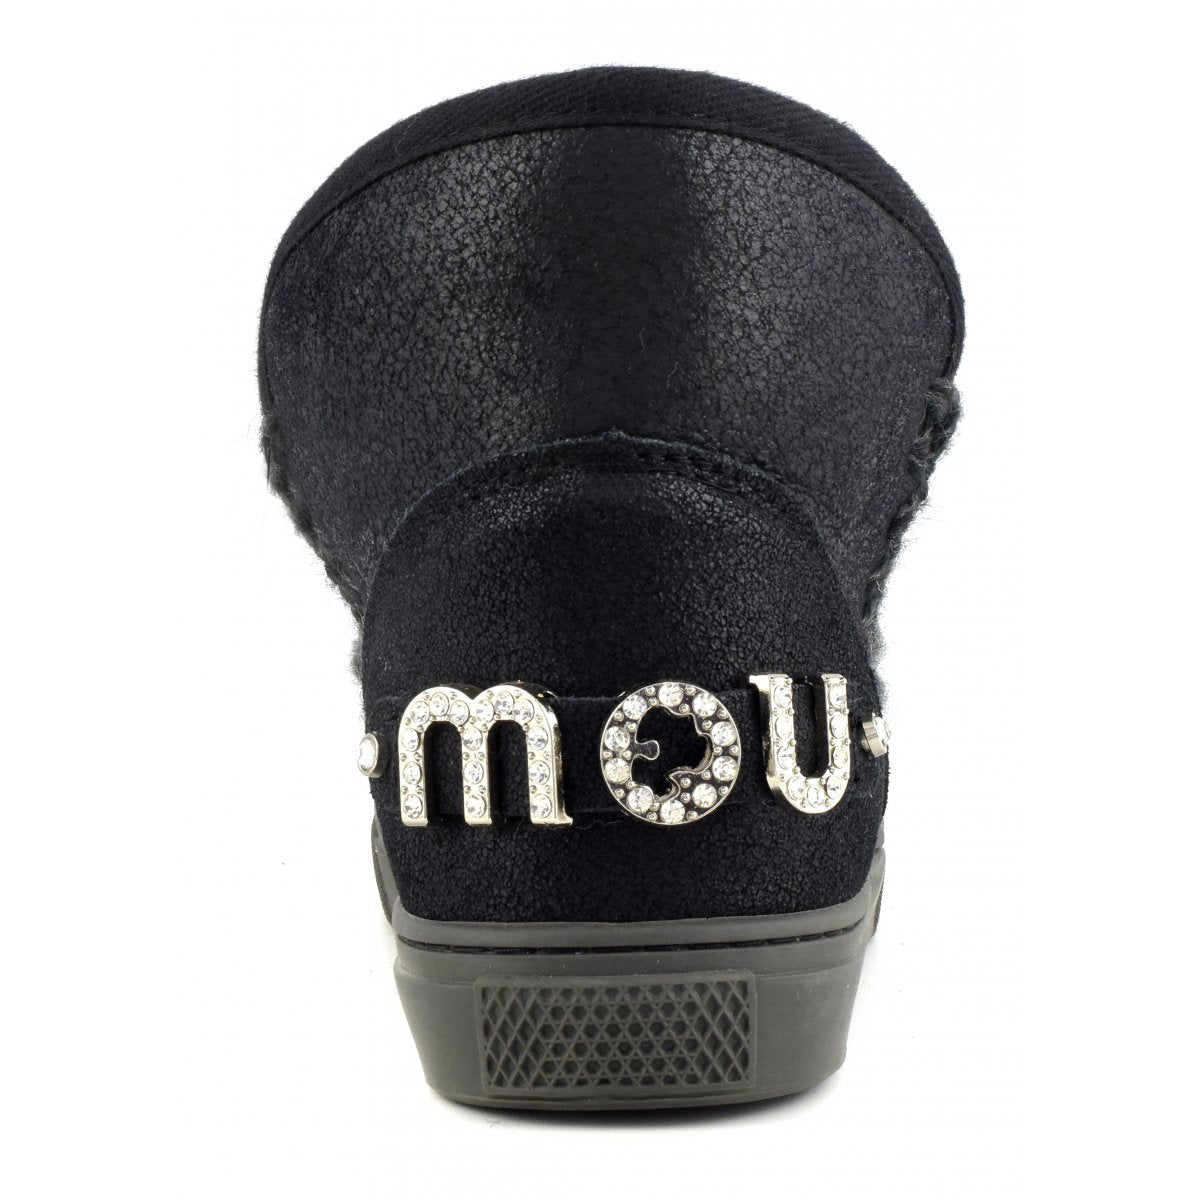 MU.FW111020B - eskimo sneakers - Scarpe